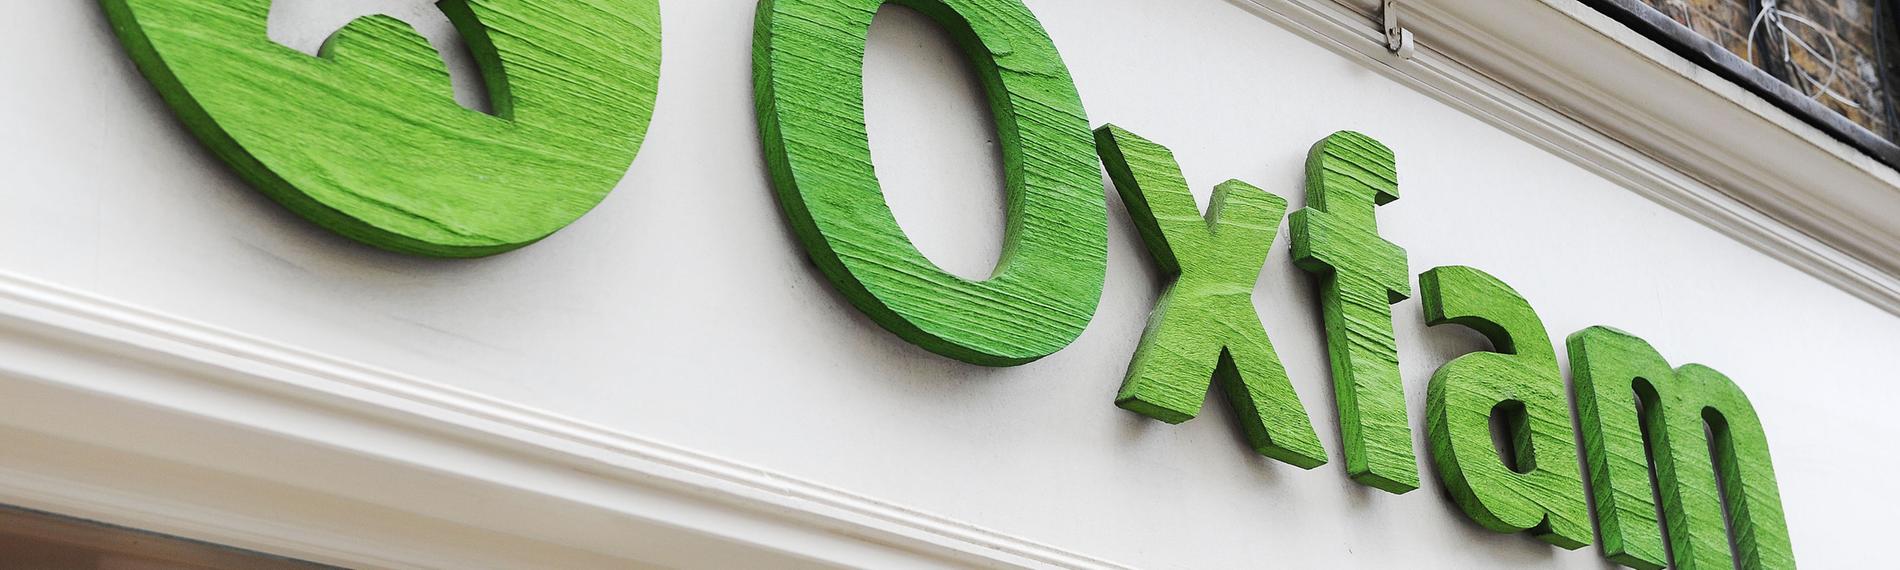 Logo der Organisation Oxfam an der Fassade eines Hauses.